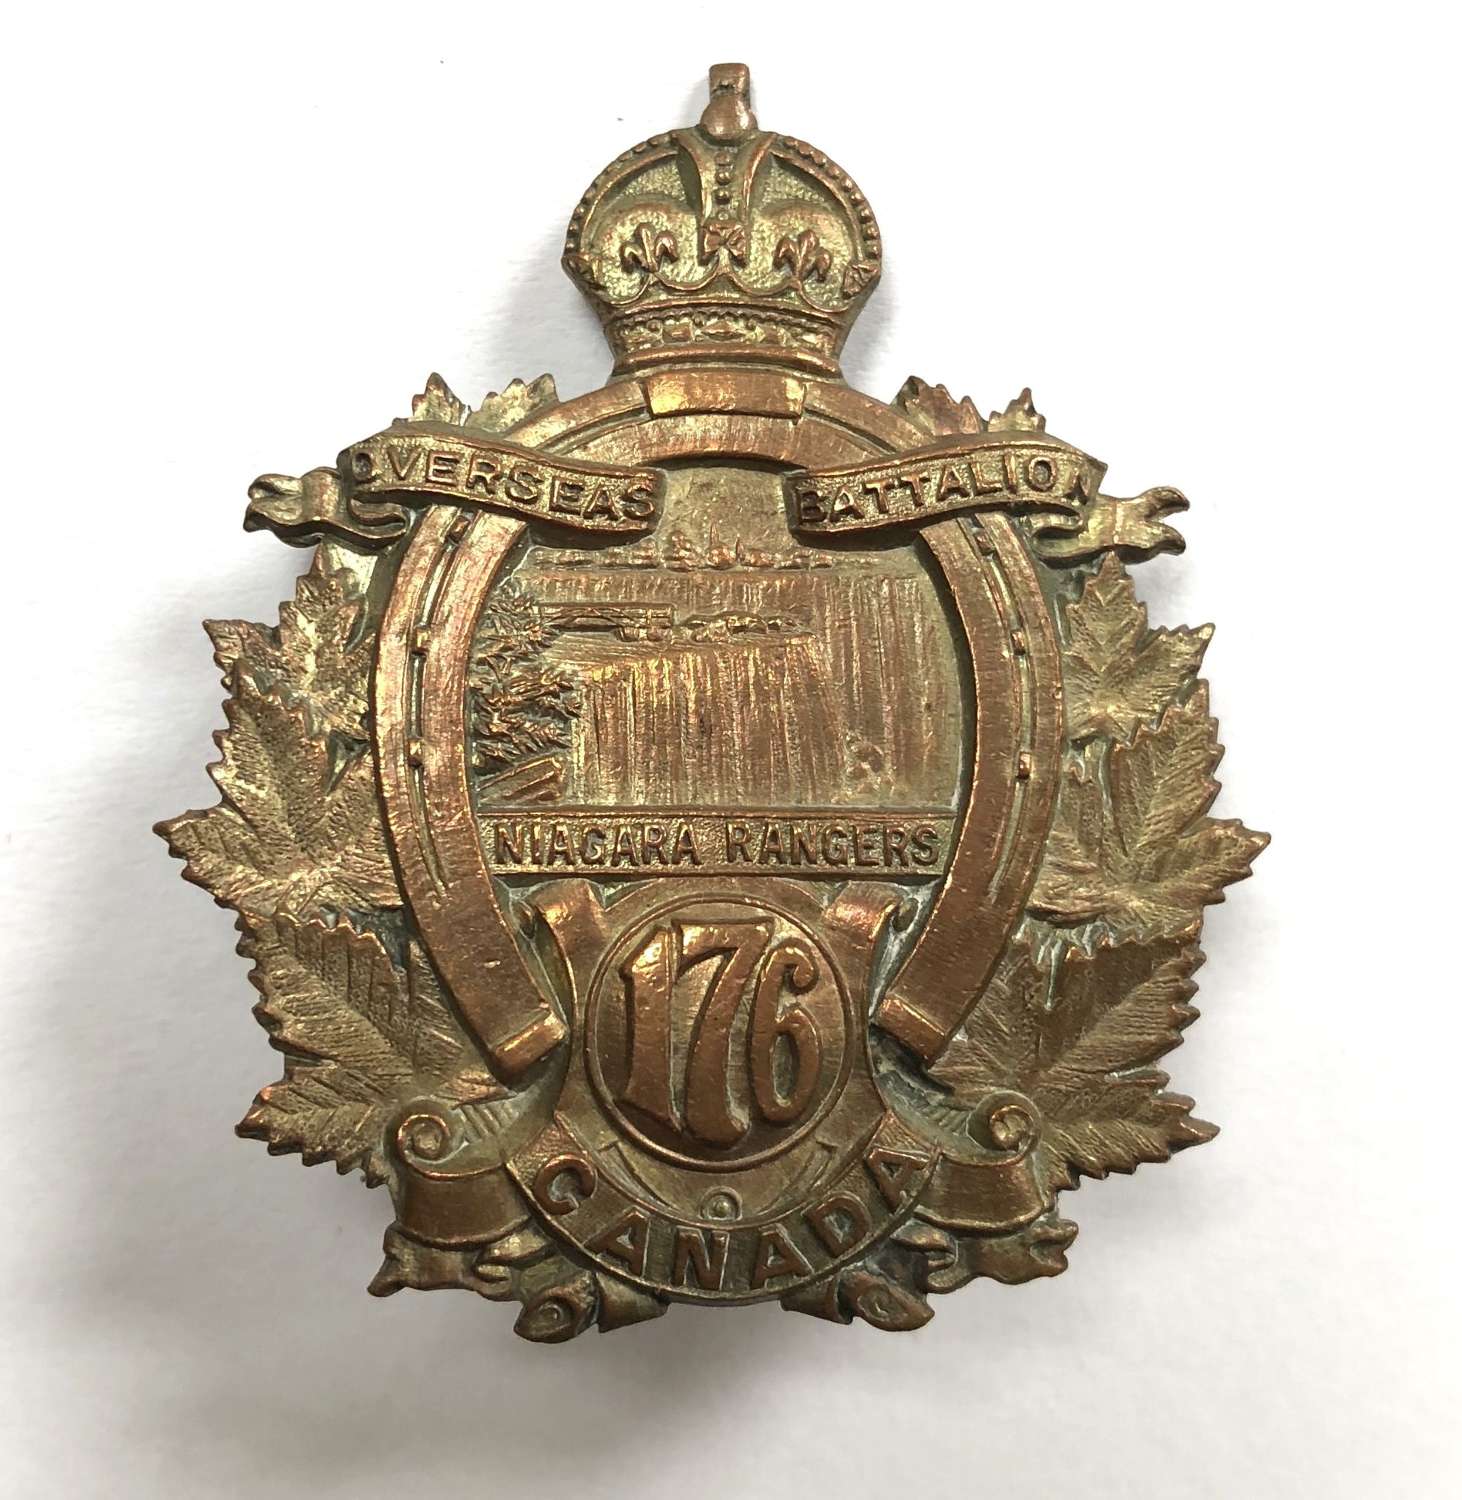 Canada. 176th Bn (Niagara Rangers) WW1 CEF cap badge